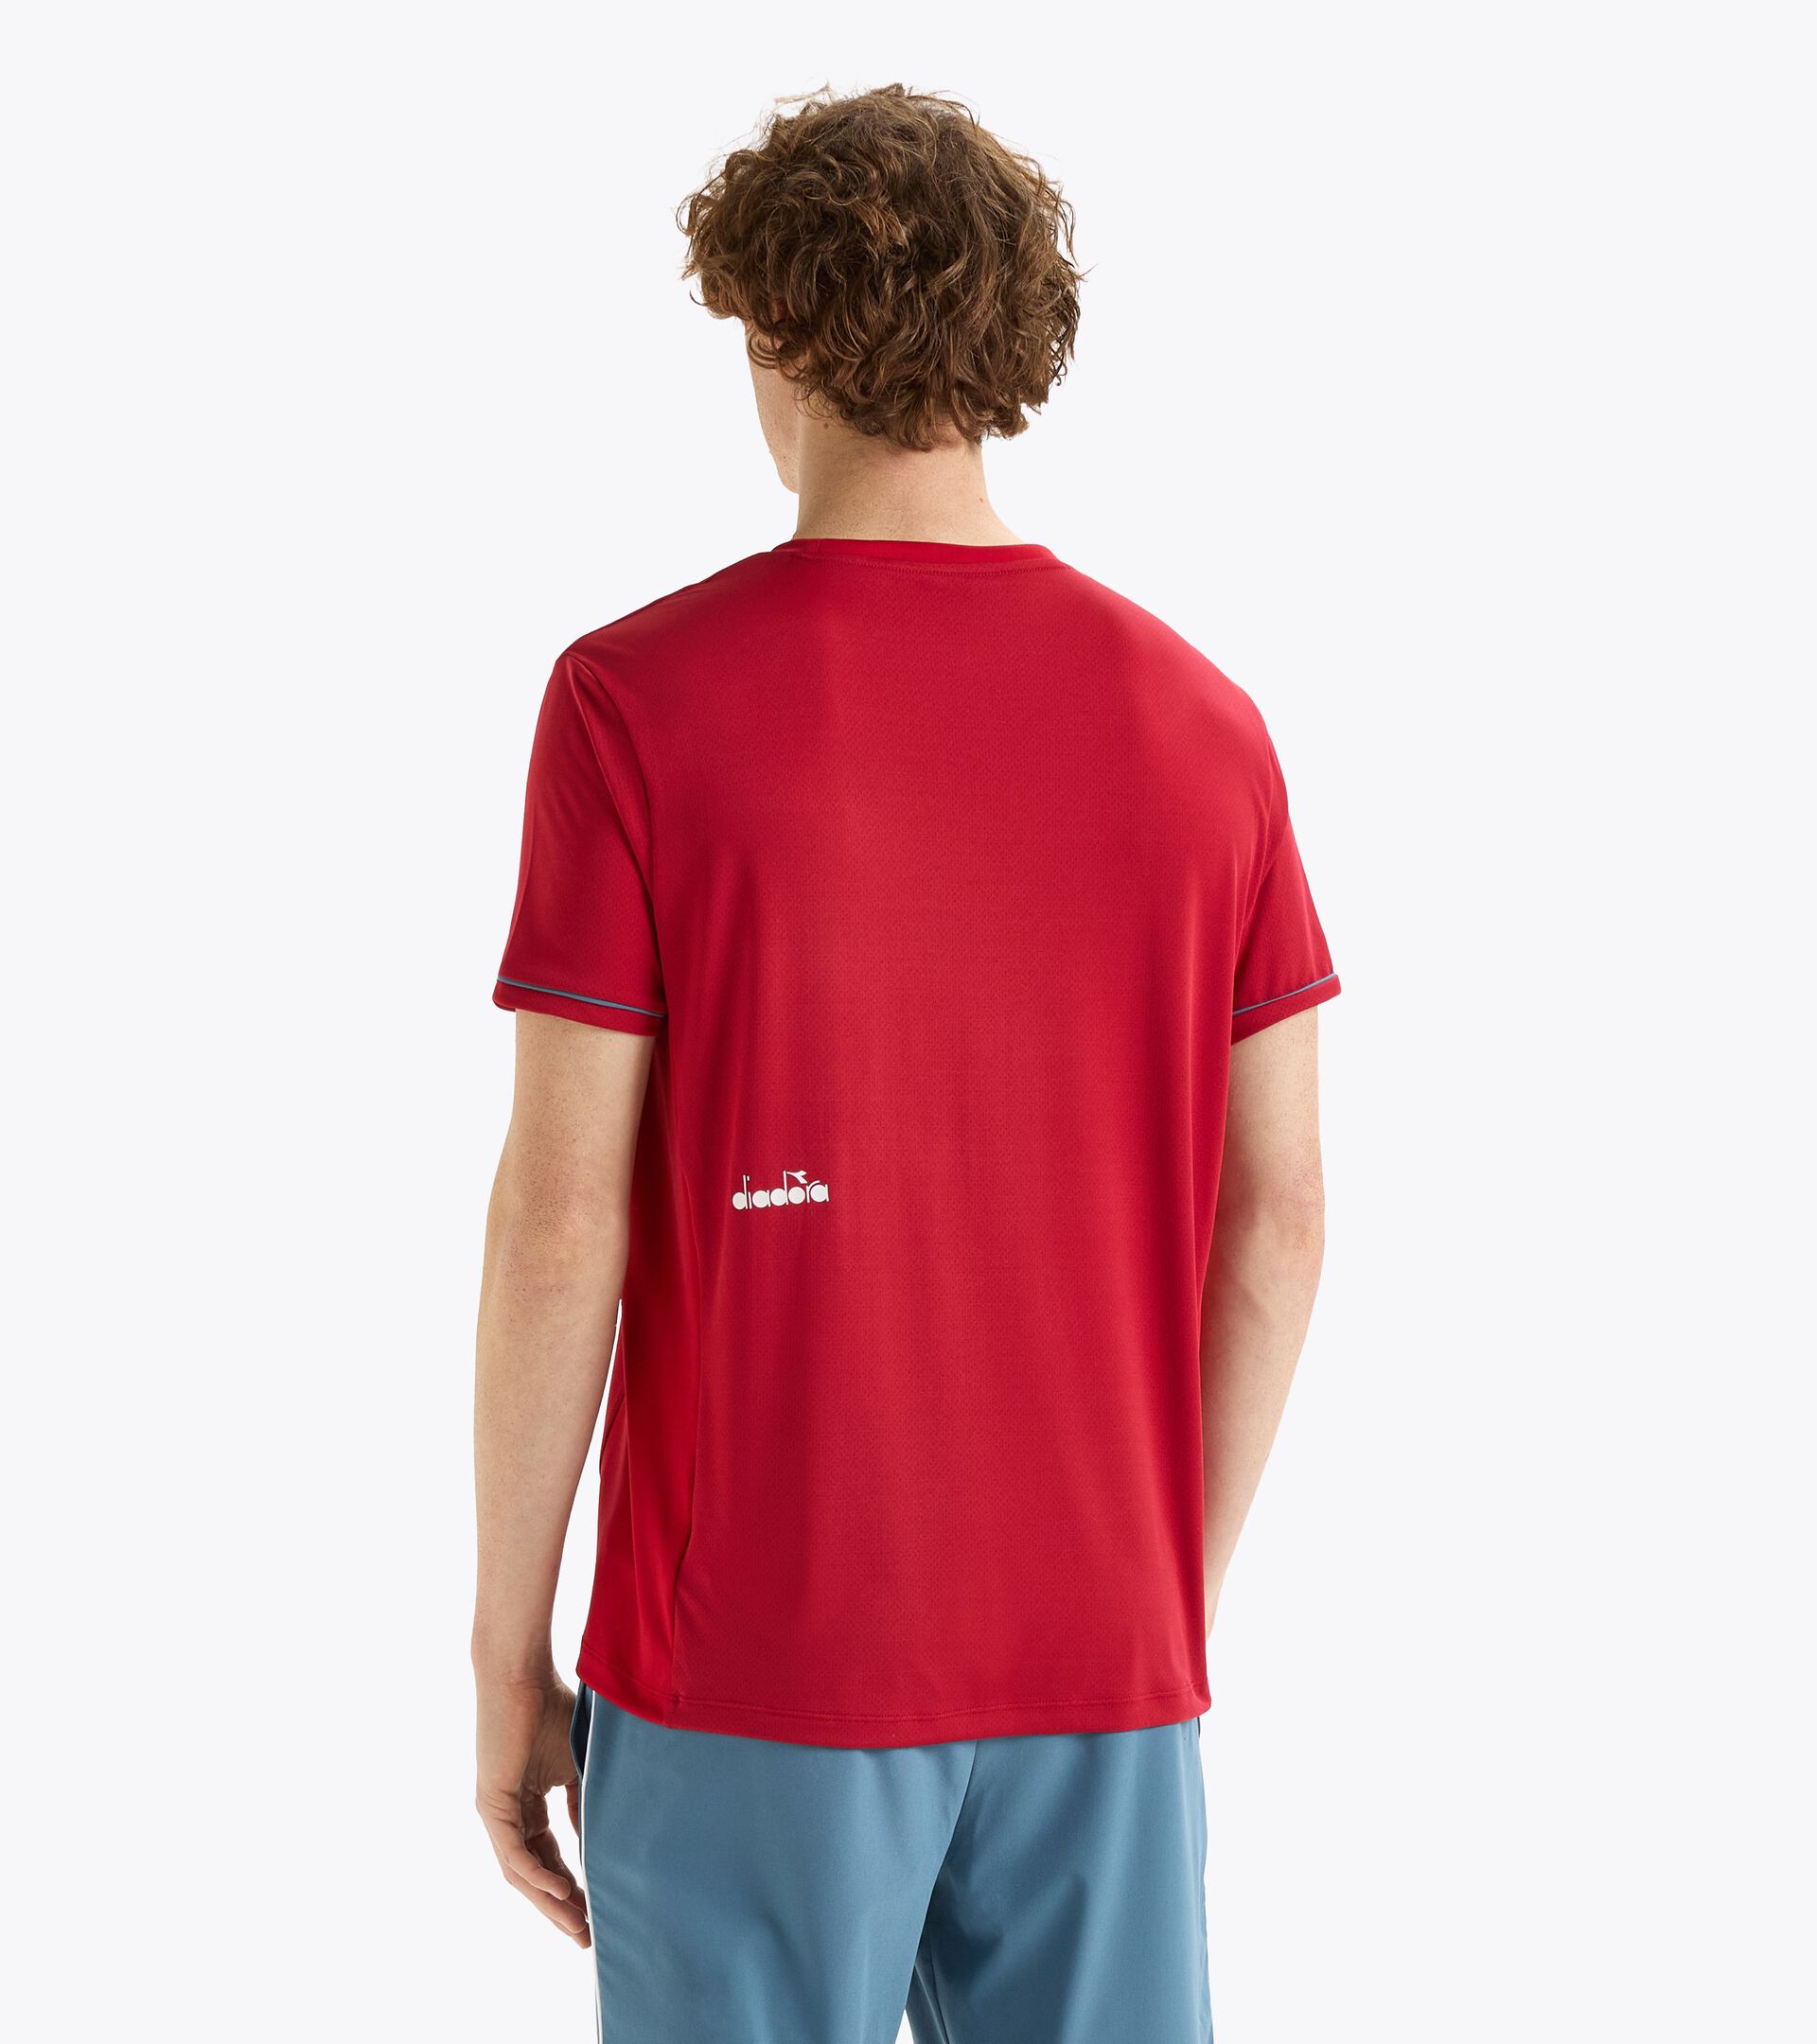 SS T-SHIRT TENNIS Tennis t-shirt - Men’s - Diadora Online Store US